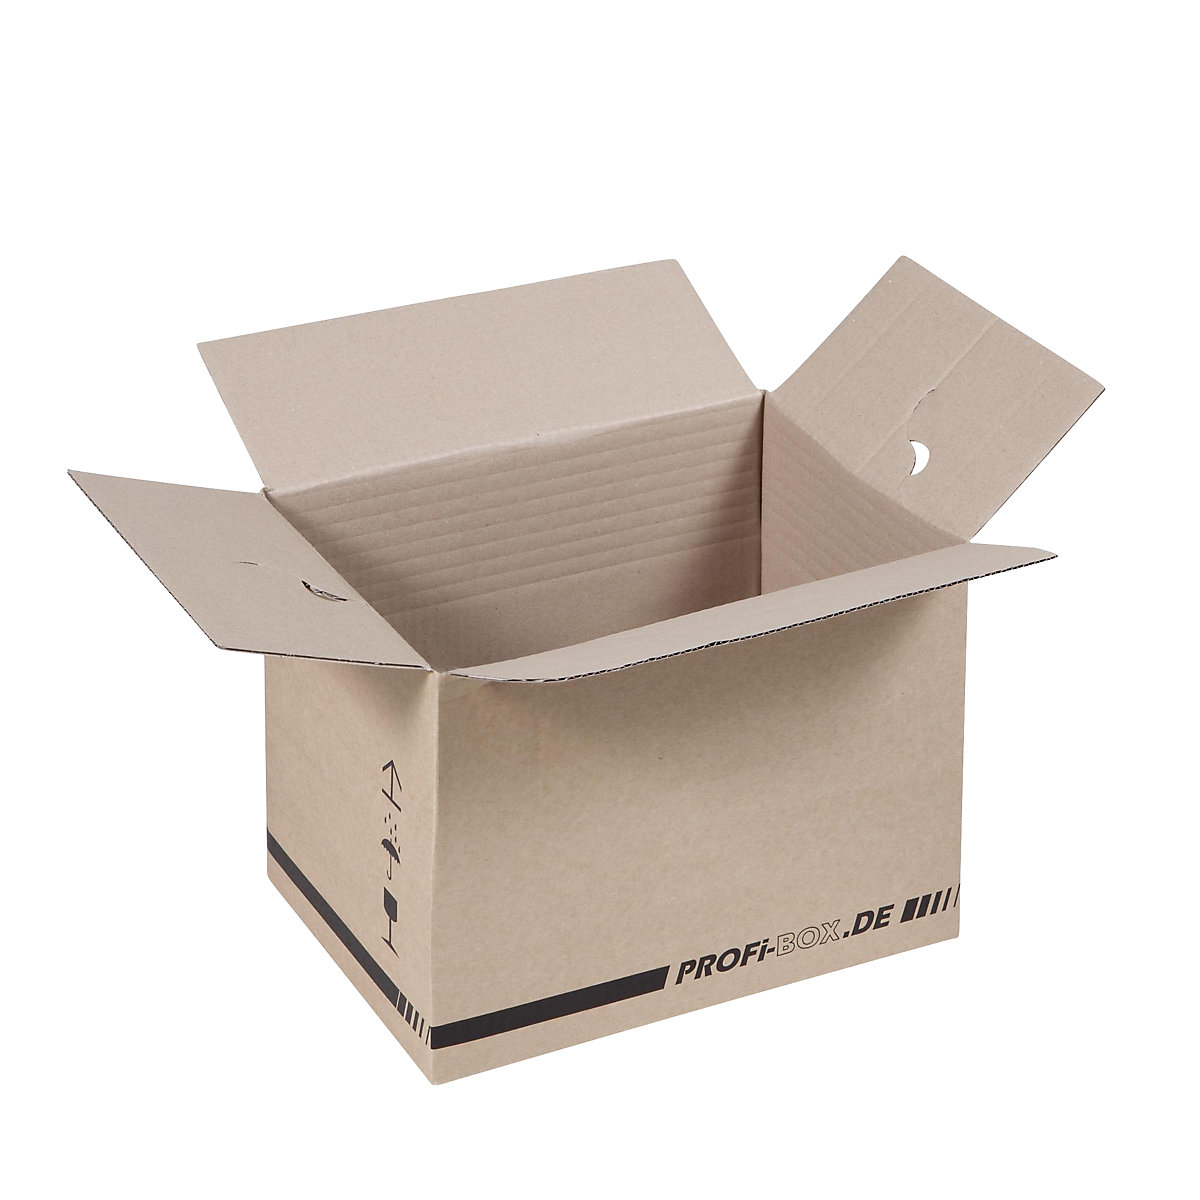 Profi box, z 1-vlnitej lepenky, FEFCO 0701, vnútorné rozmery 305 x 215 x 220 mm, OJ 50 ks-11